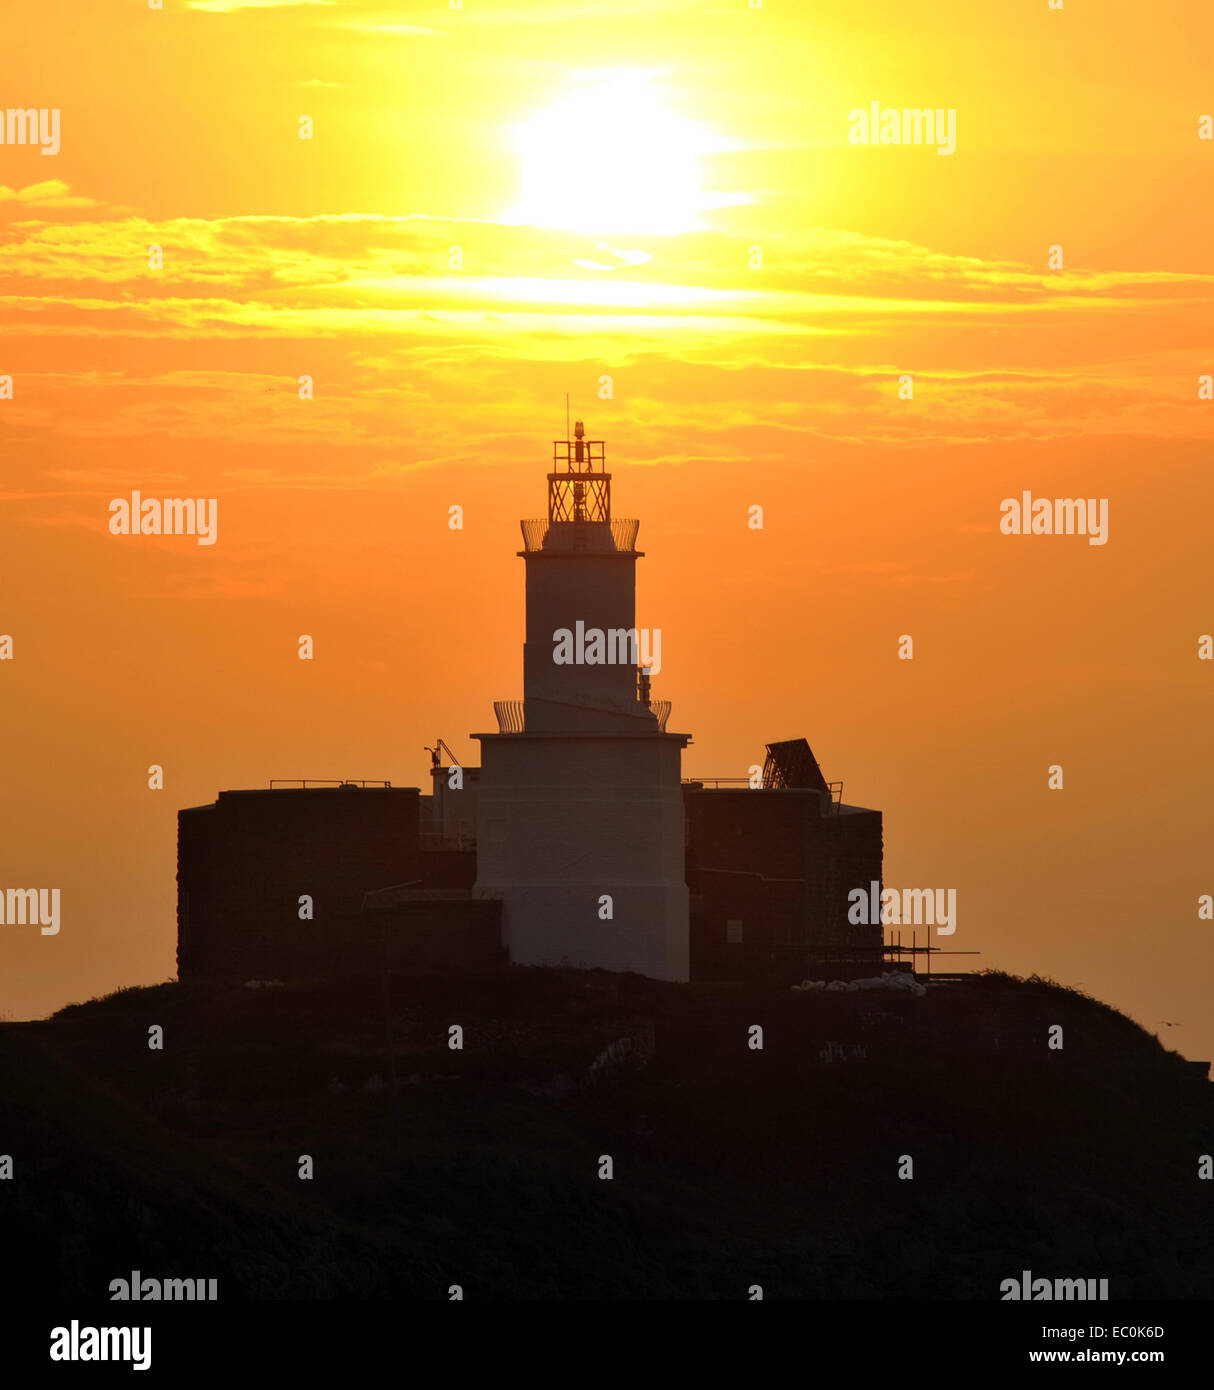 Mumbles Leuchtturm bei Sonnenaufgang mit goldenen Sonne über dem Light Tower. Mumbles war der beste Ort in Wales 2018 zu Leben gestimmt. Stockfoto